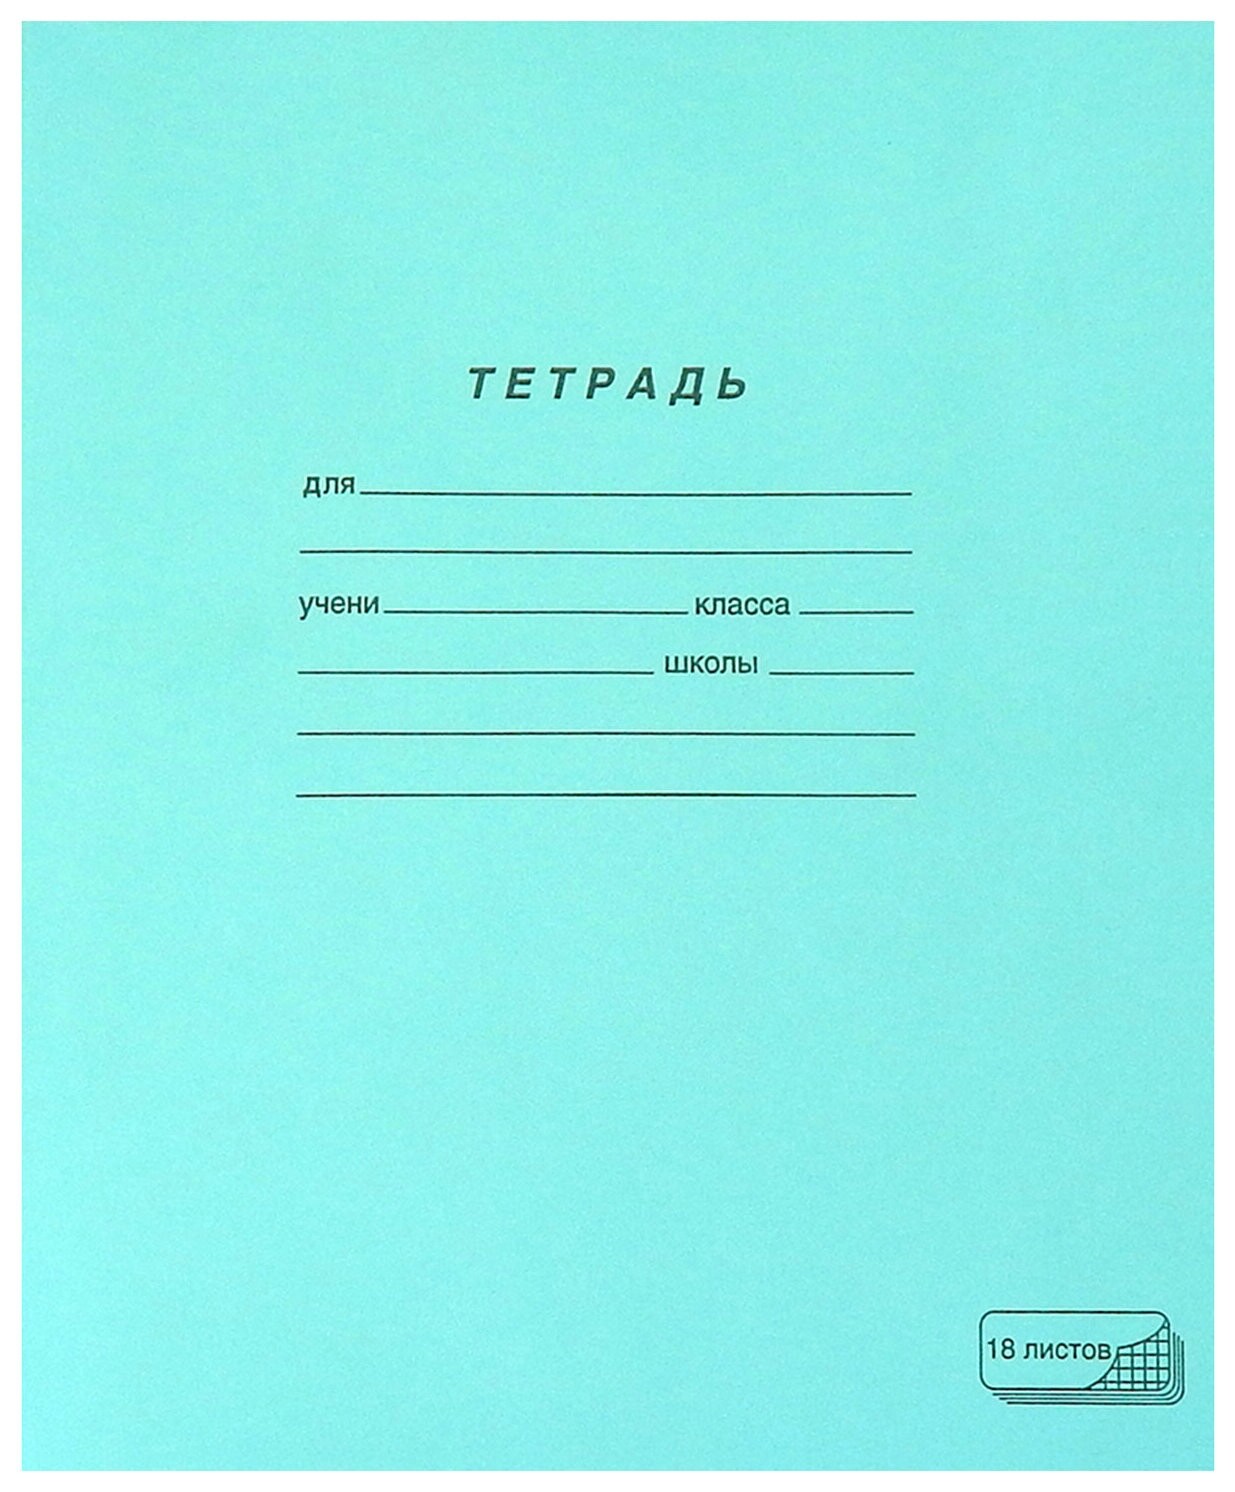 Тетрадь зелёная обложка 18 л., клетка с полями, офсет, Пзбм, 19896 ПЗБФ